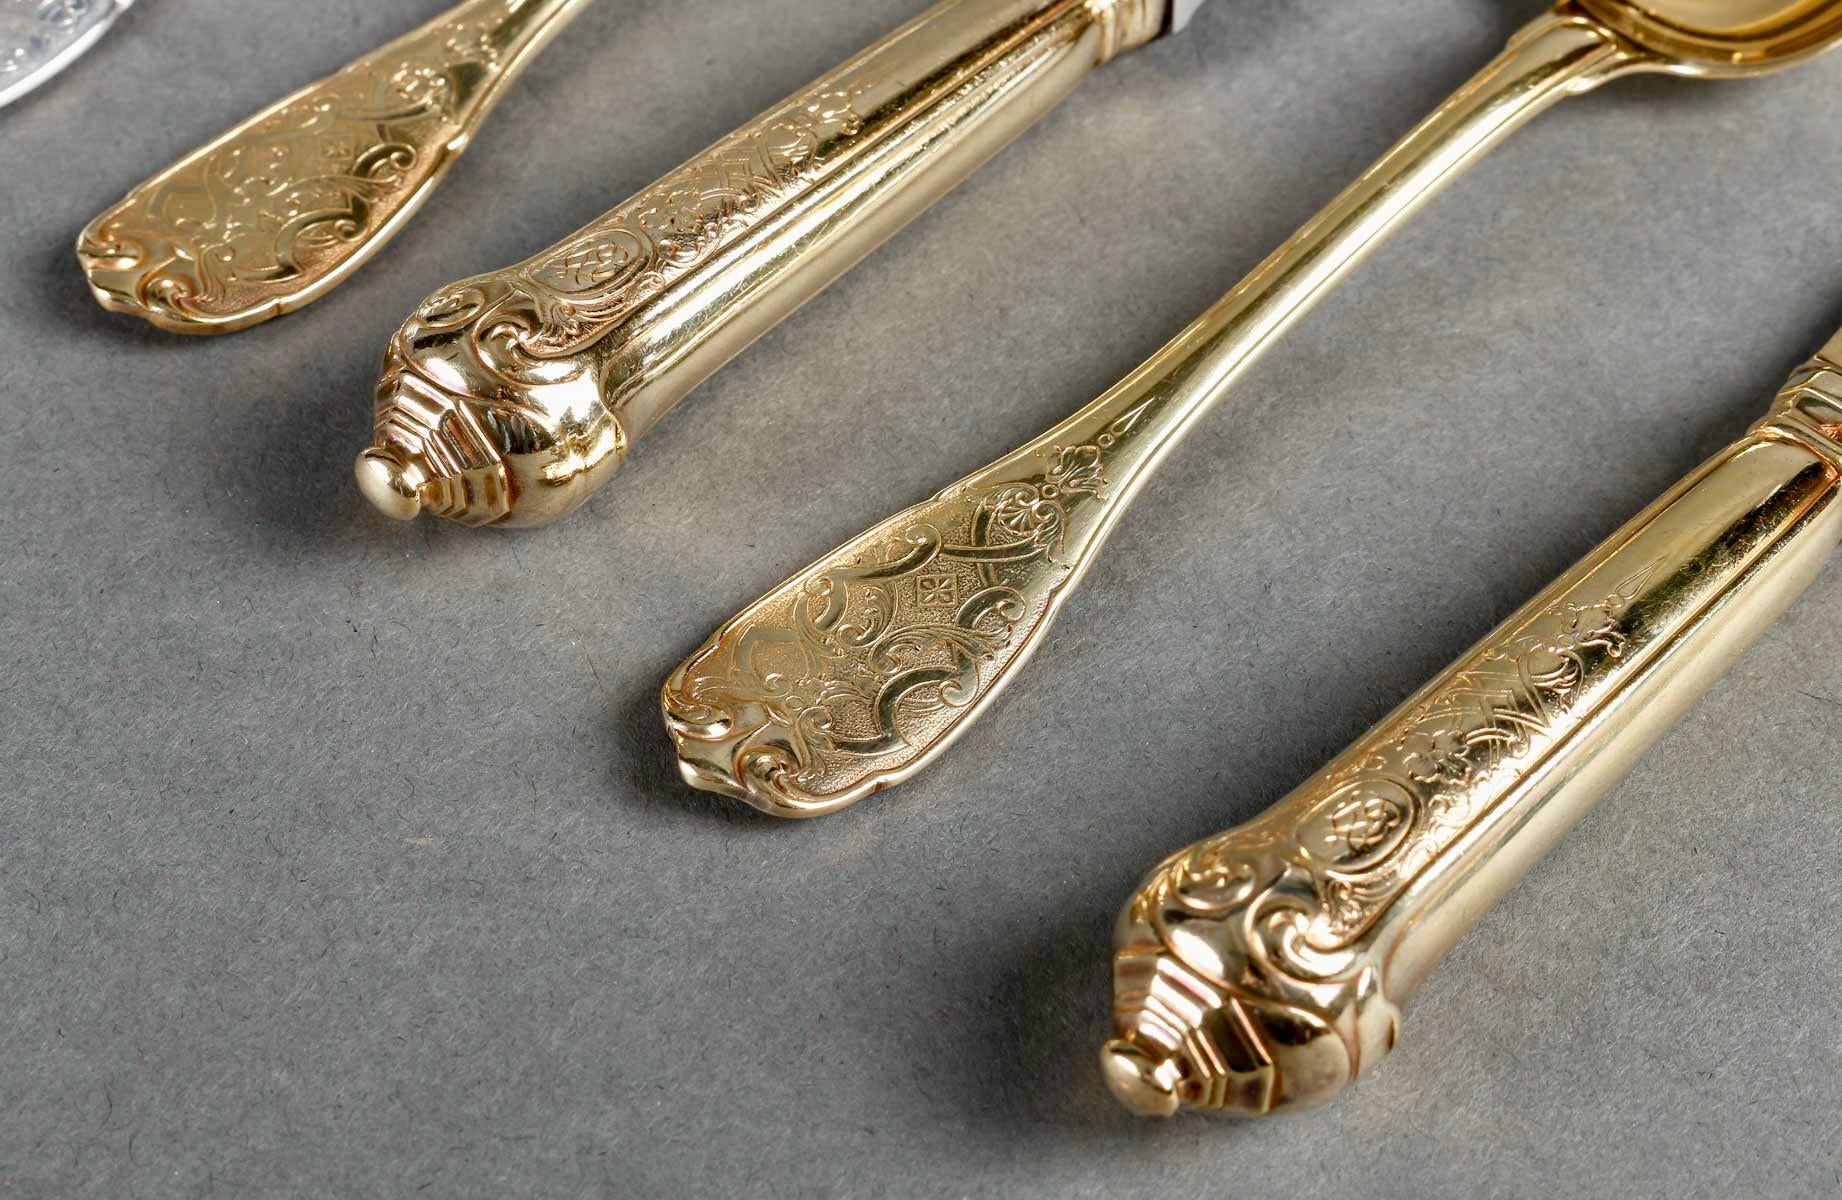 Puiforcat - Cutlery Flatware Set Elysee Sterling Silver & Vermeil - 127 Pieces 2